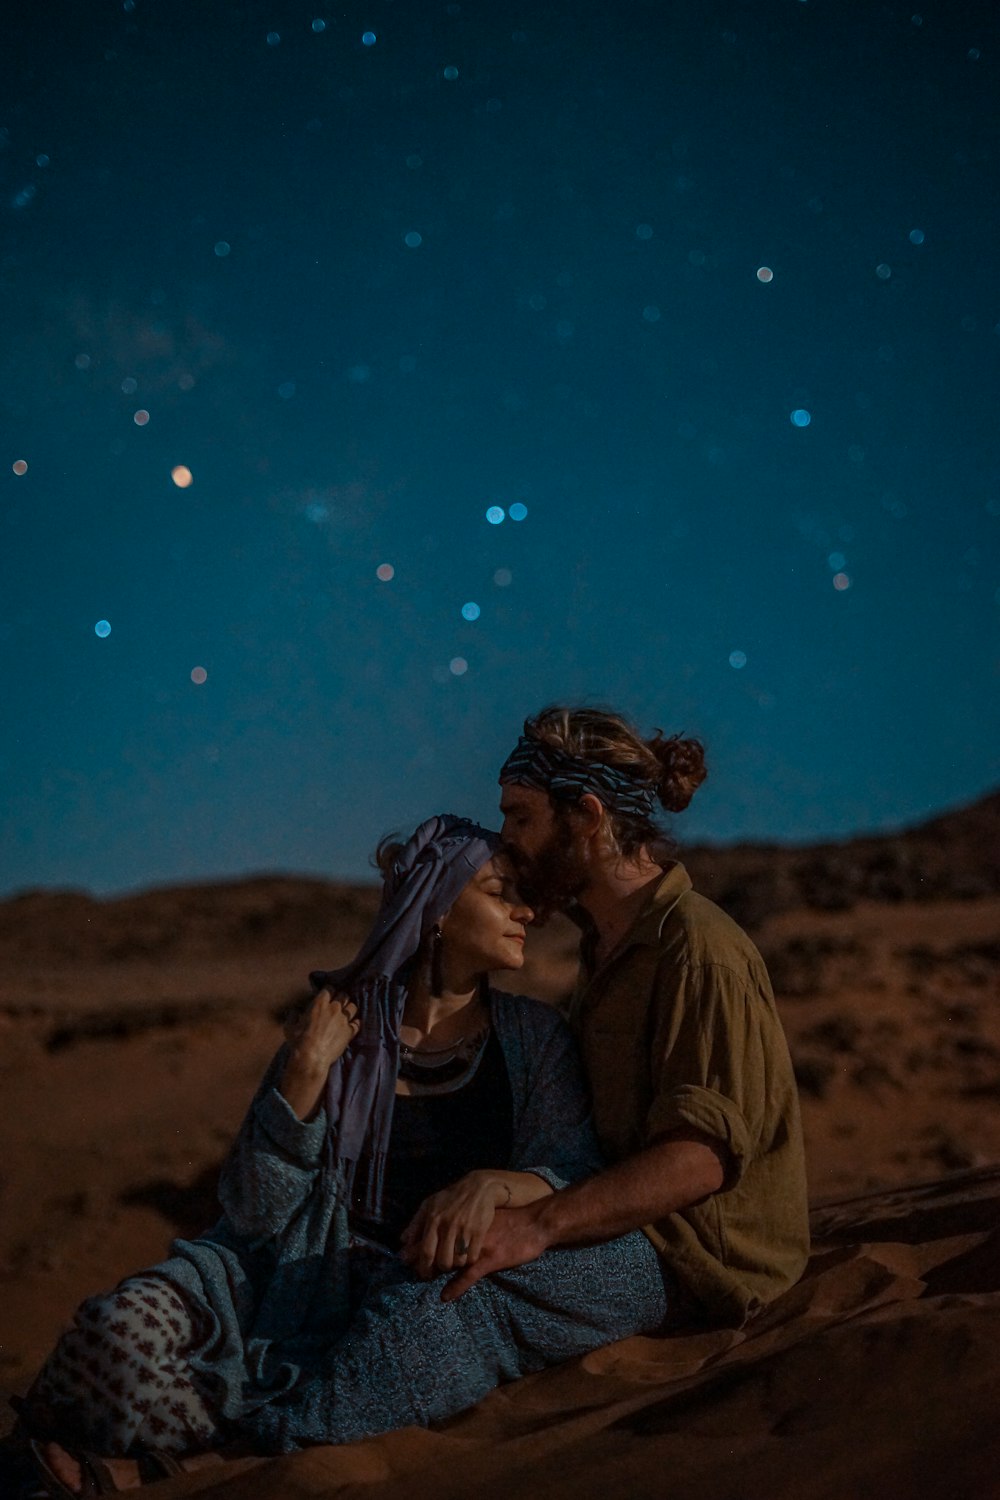 夜の青空の下、砂漠の砂の上に座る男女